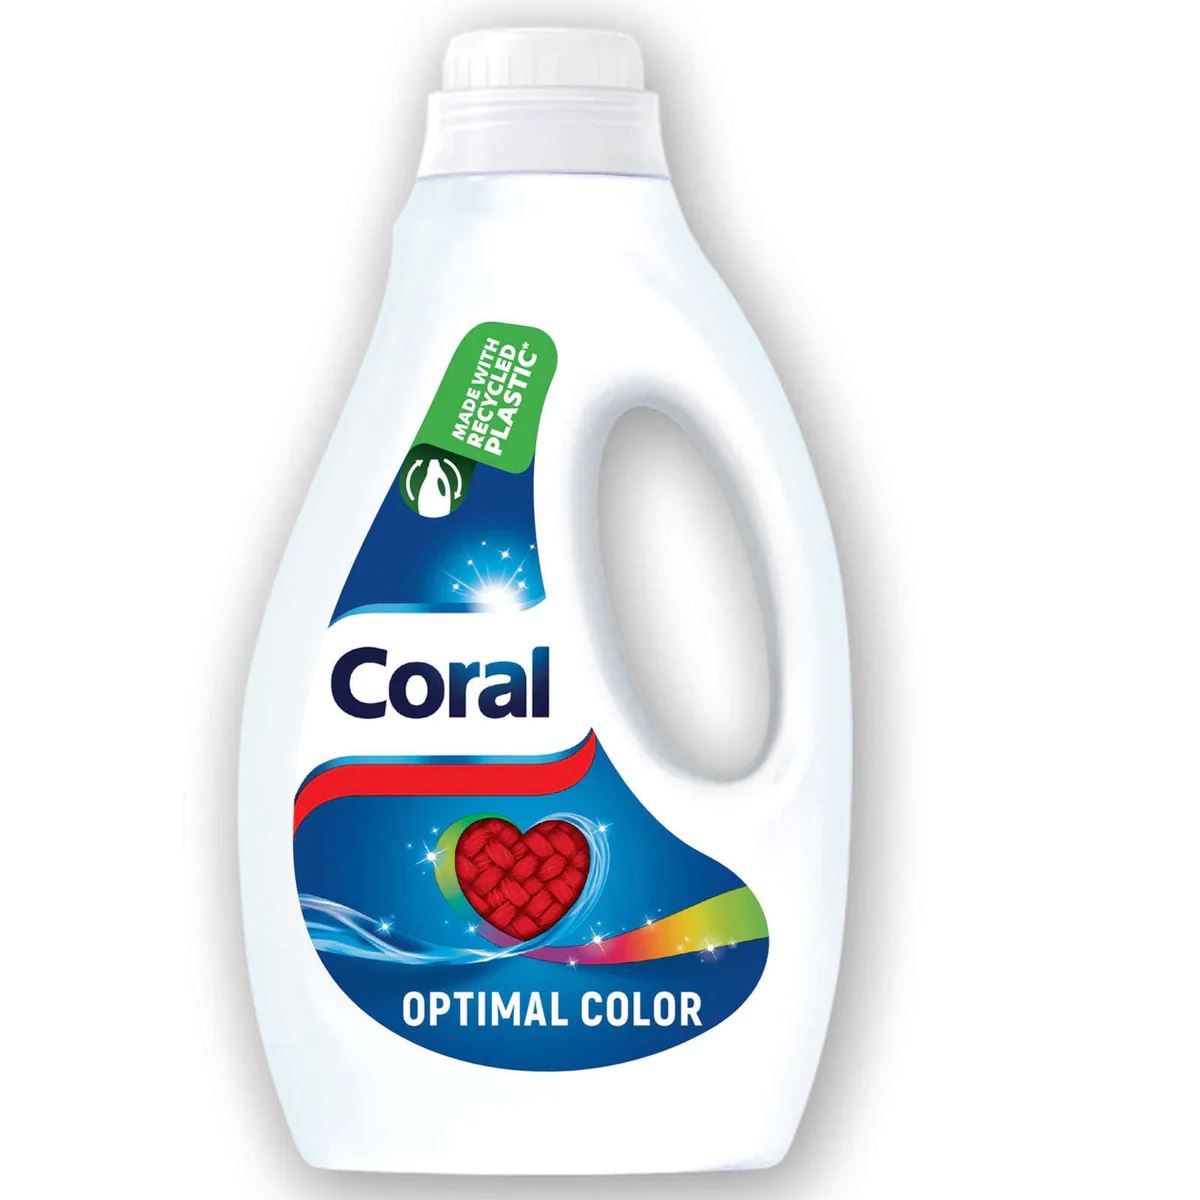 Coral-vloeibaar-wasmiddel-1-25l-26sc-optimal-color